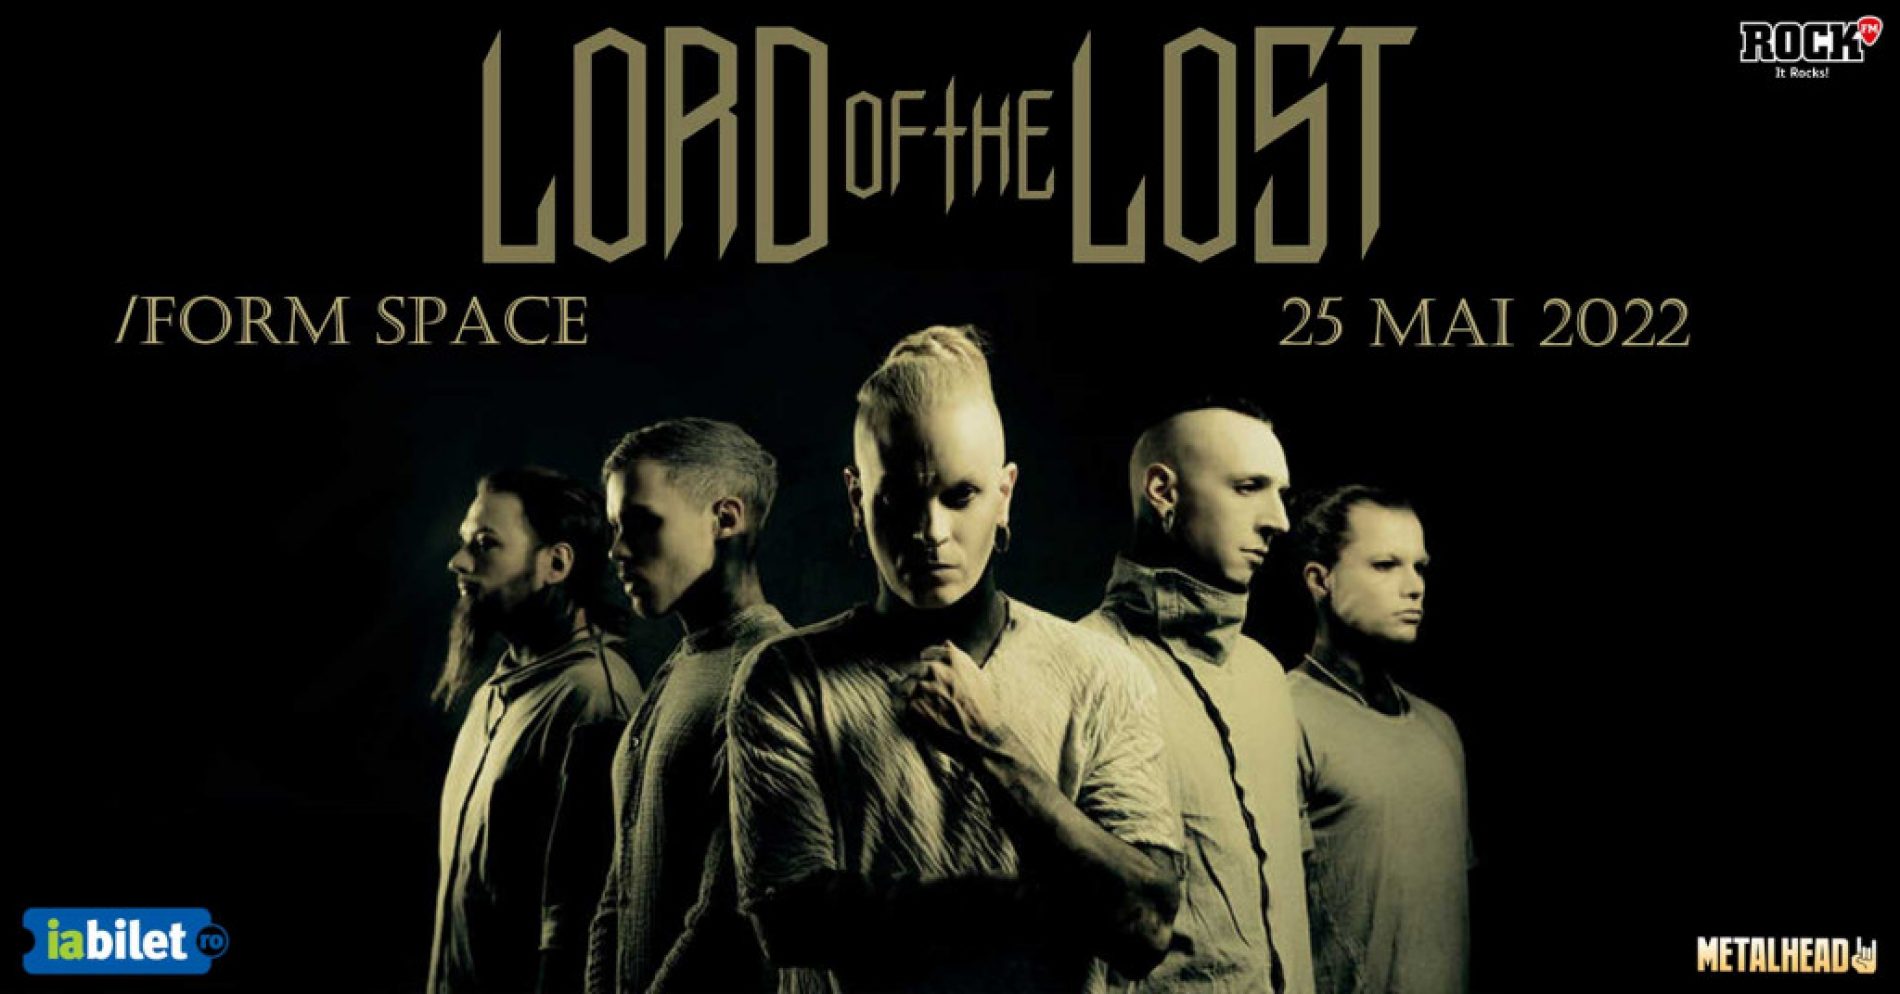 Lord Of The Lost la Cluj-Napoca: Program și reguli de acces